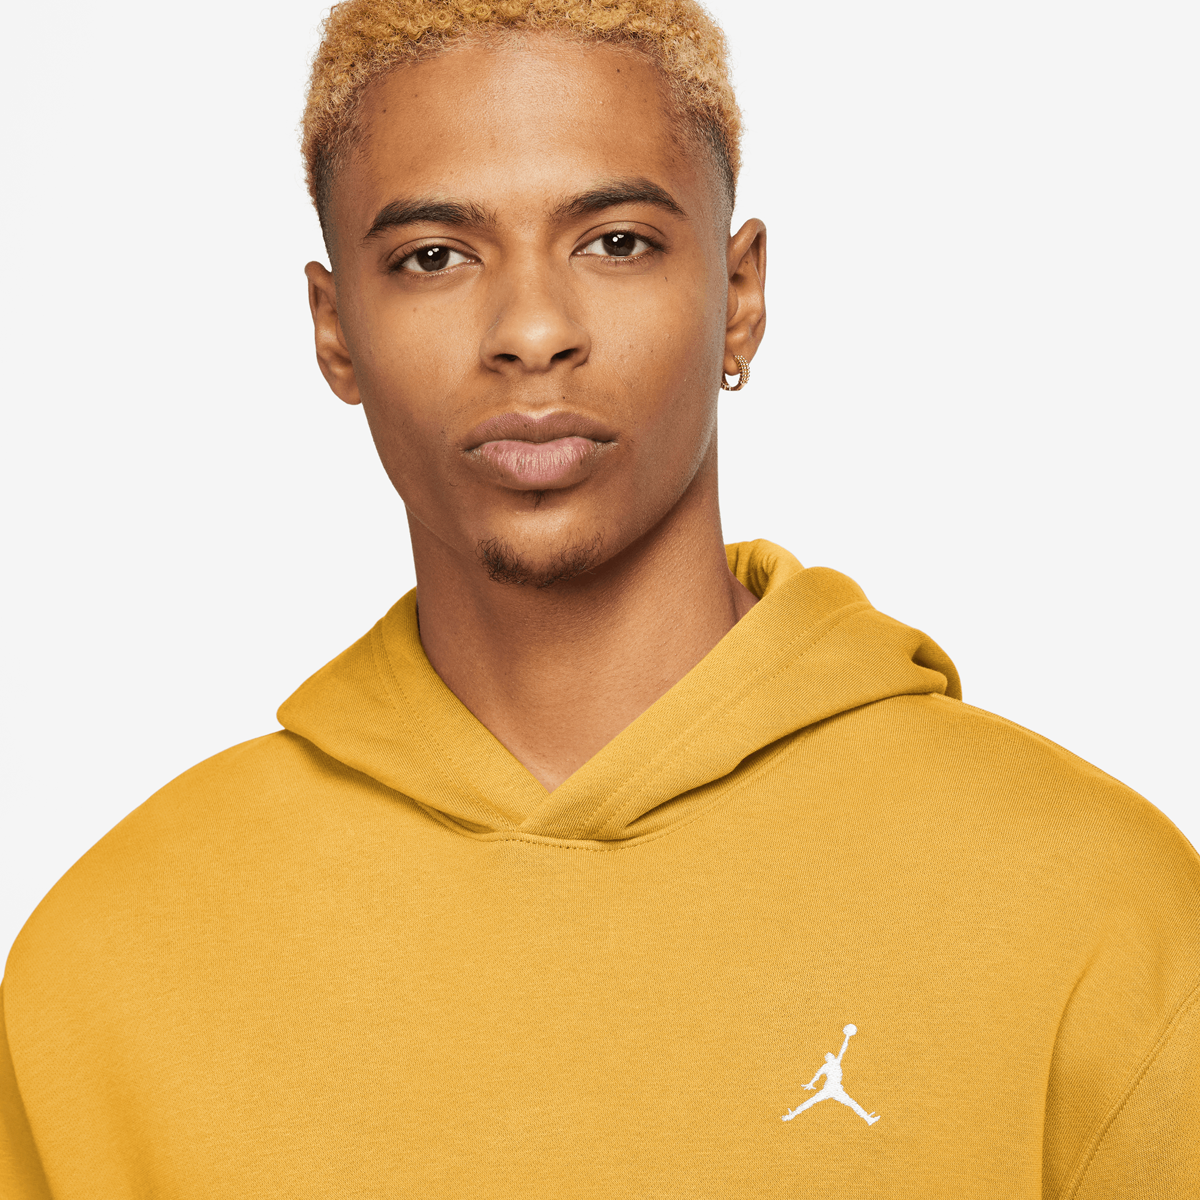 Jordan Essentials Fleece Pullover Hoodies Heren yellow ochre white maat: M beschikbare maaten:S M L XL